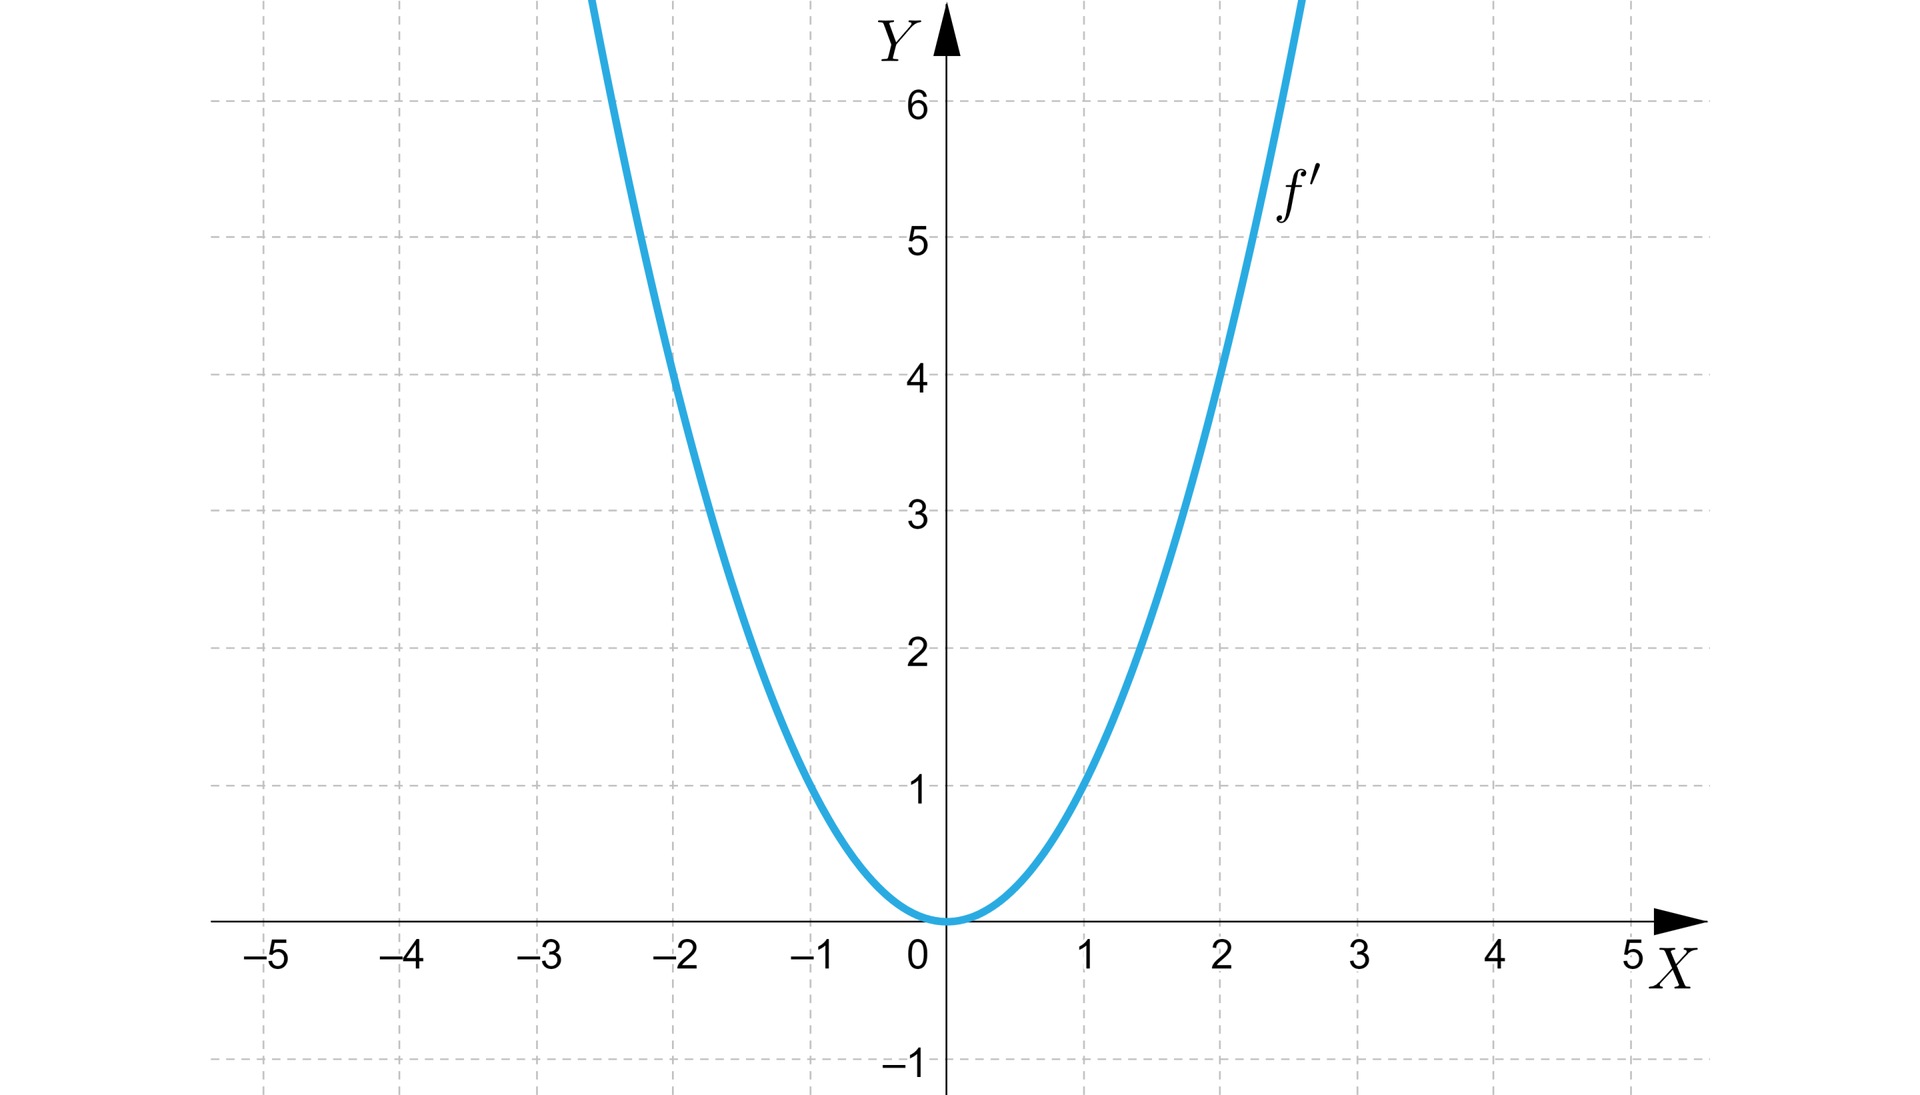 Na ilustracji znajduje się układ współrzędnych z poziomą osią x od minus 5 do 5 i pionową osią y od minus 1 do  6, w układzie zaznaczono wykres funkcji f'.  Wykres ma kształt paraboli o ramionach skierowanych do góry i wierzchołku w punkcie nawias zero średnik zero zamknięcie nawiasu. 